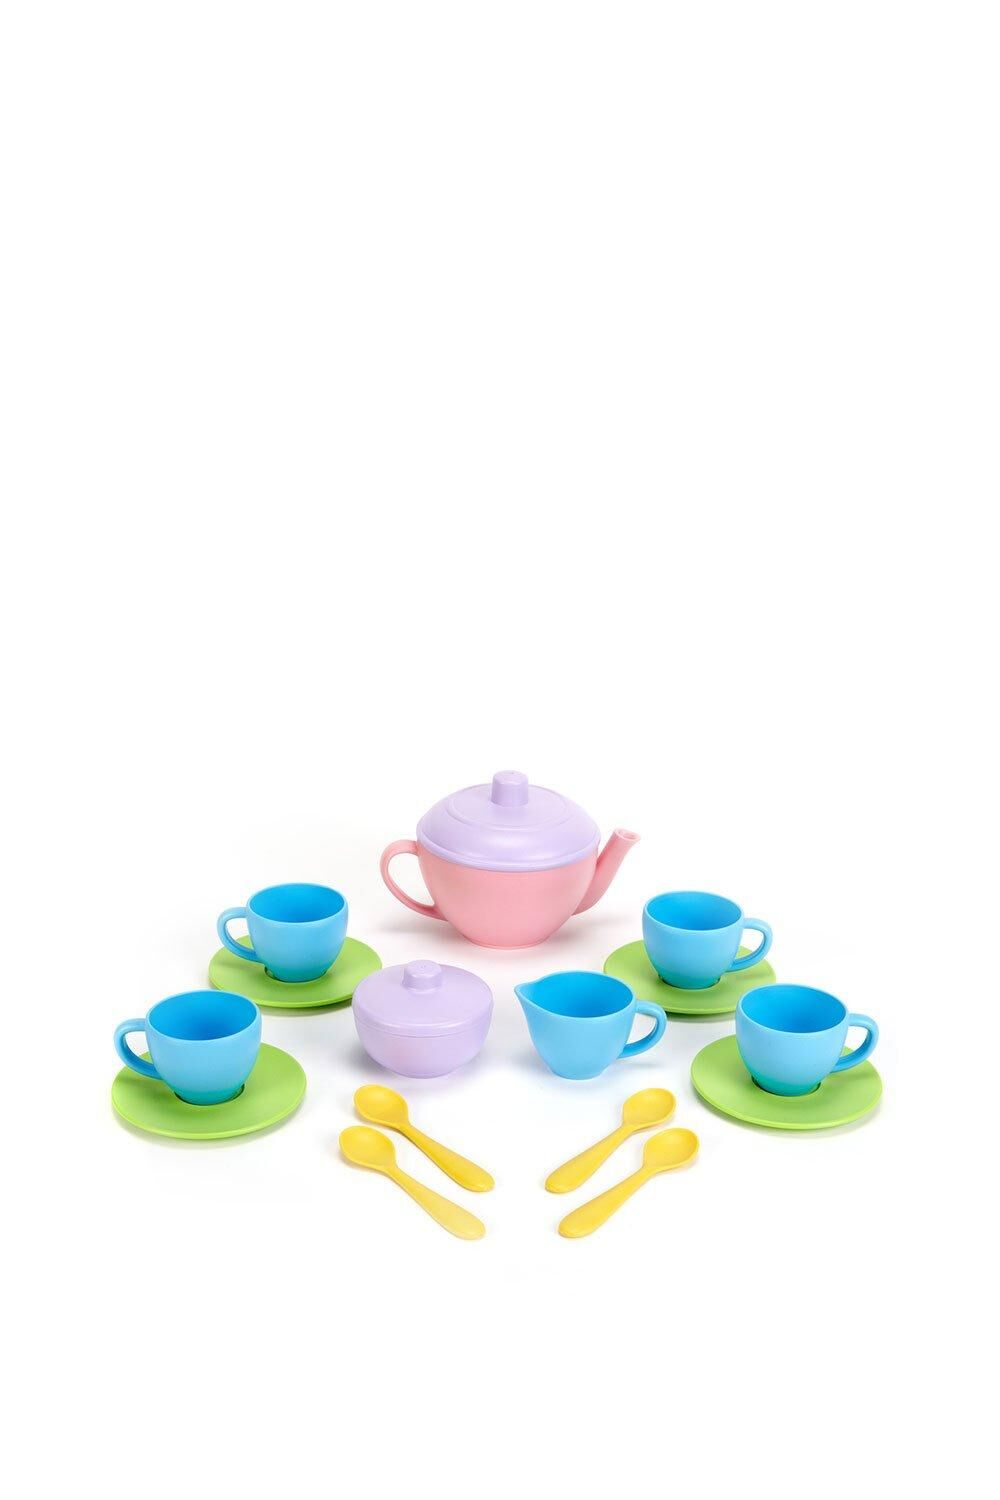 Green Toys Tea Set with Pink Teapot